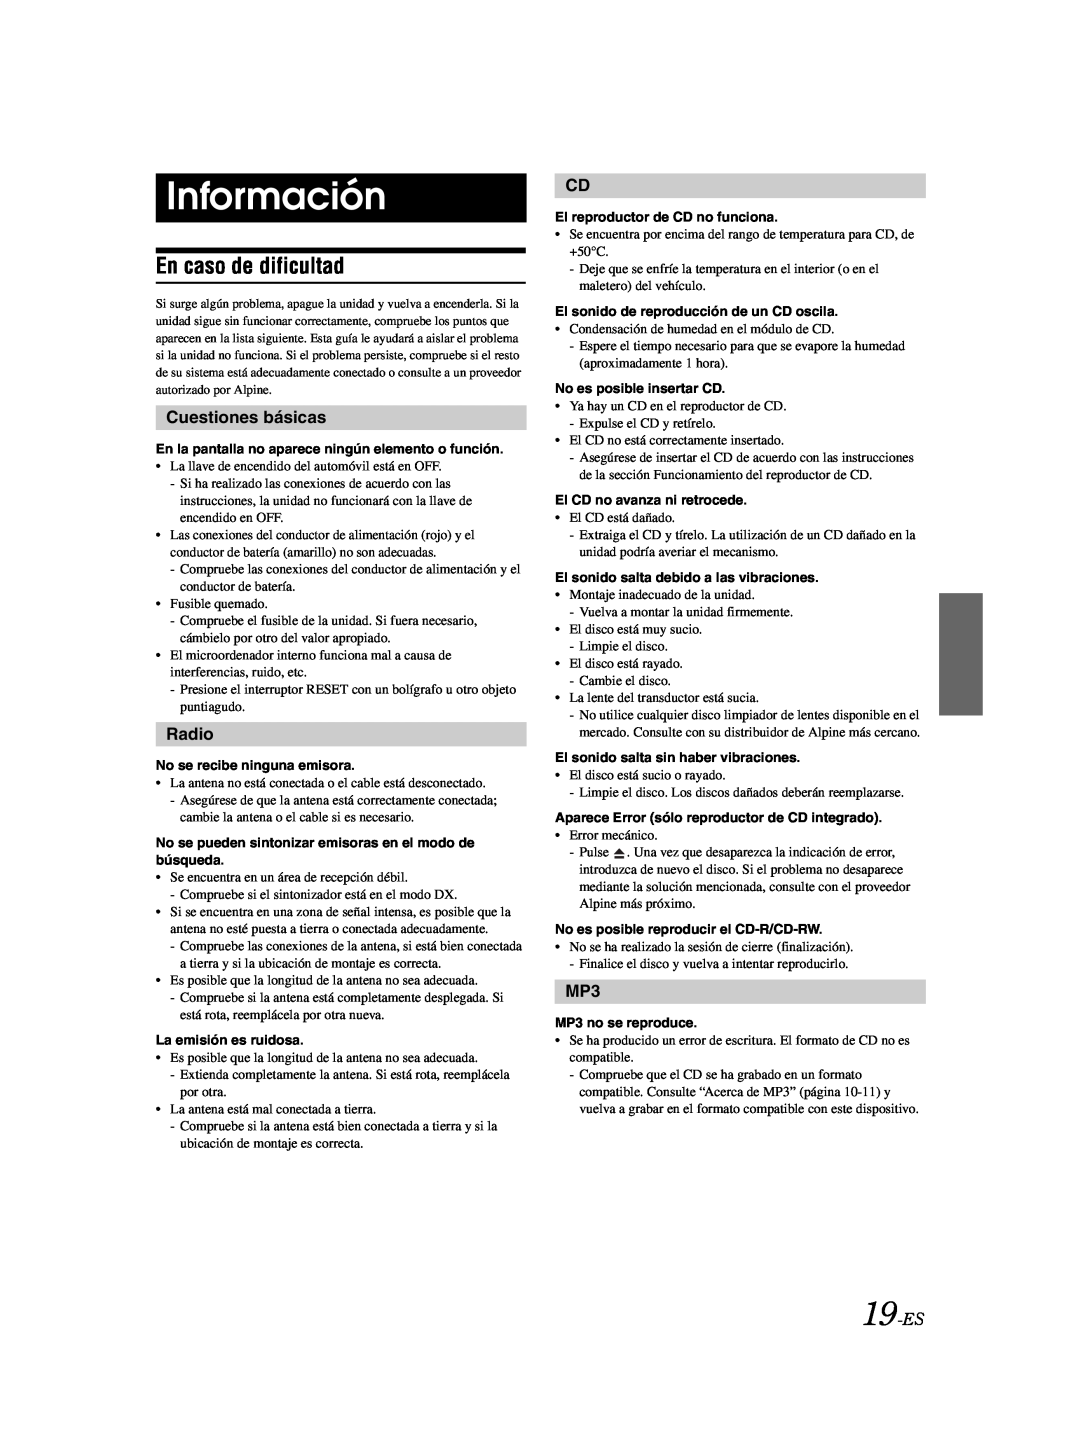 Alpine CDE-9870 owner manual Información, En caso de dificultad, Cuestiones básicas, 19-ES, Radio 